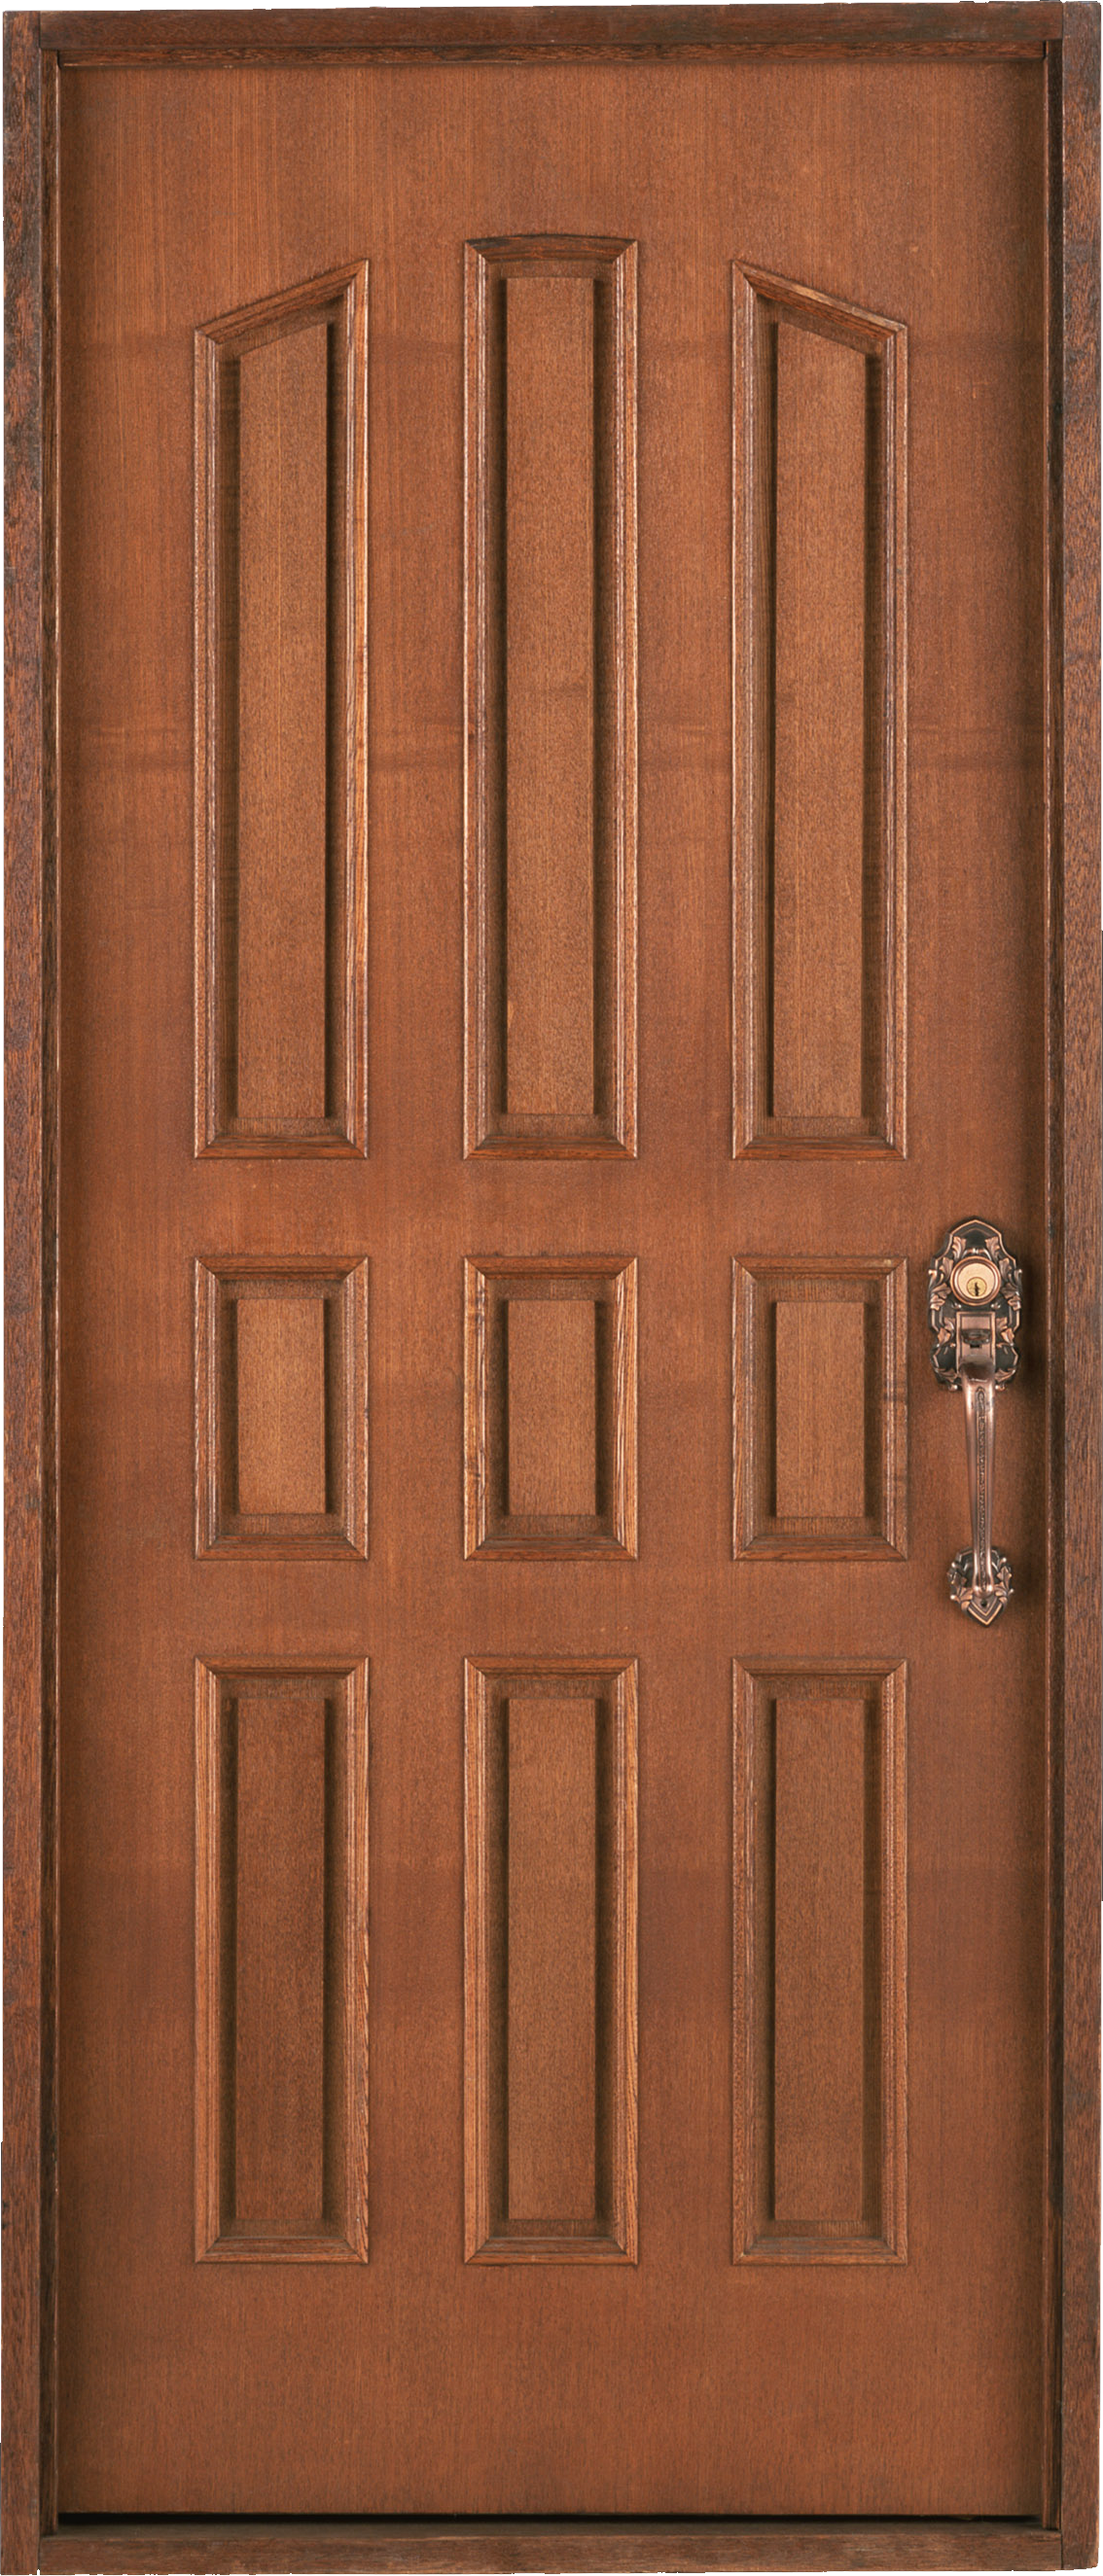 Immagine di PNG della porta di legno esterna